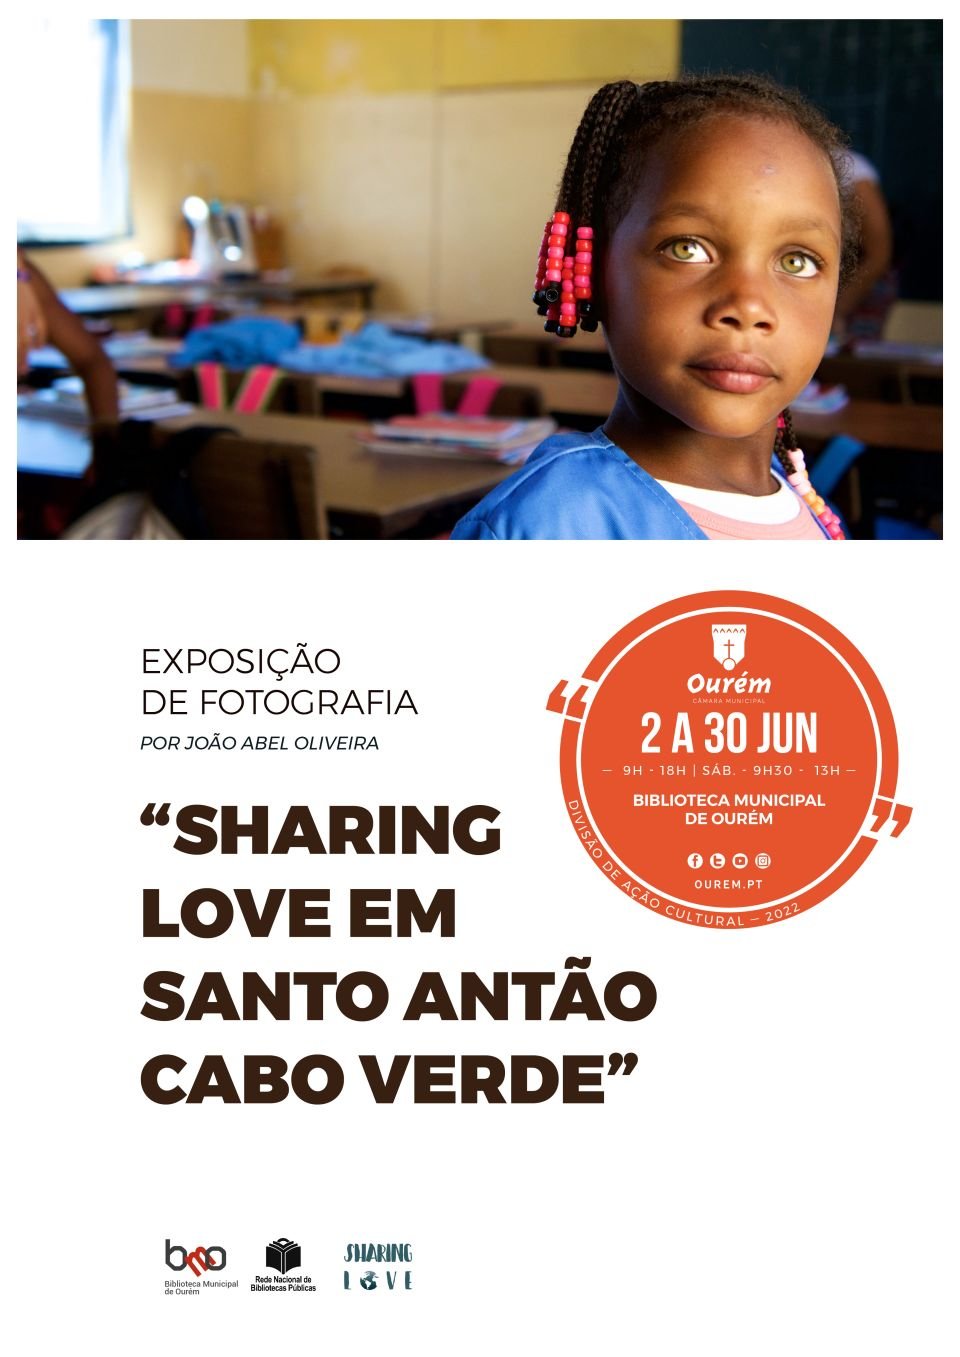 EXPOSIÇÃO DE FOTOGRAFIA “SHARING LOVE EM SANTO ANTÃO – CABO VERDE”